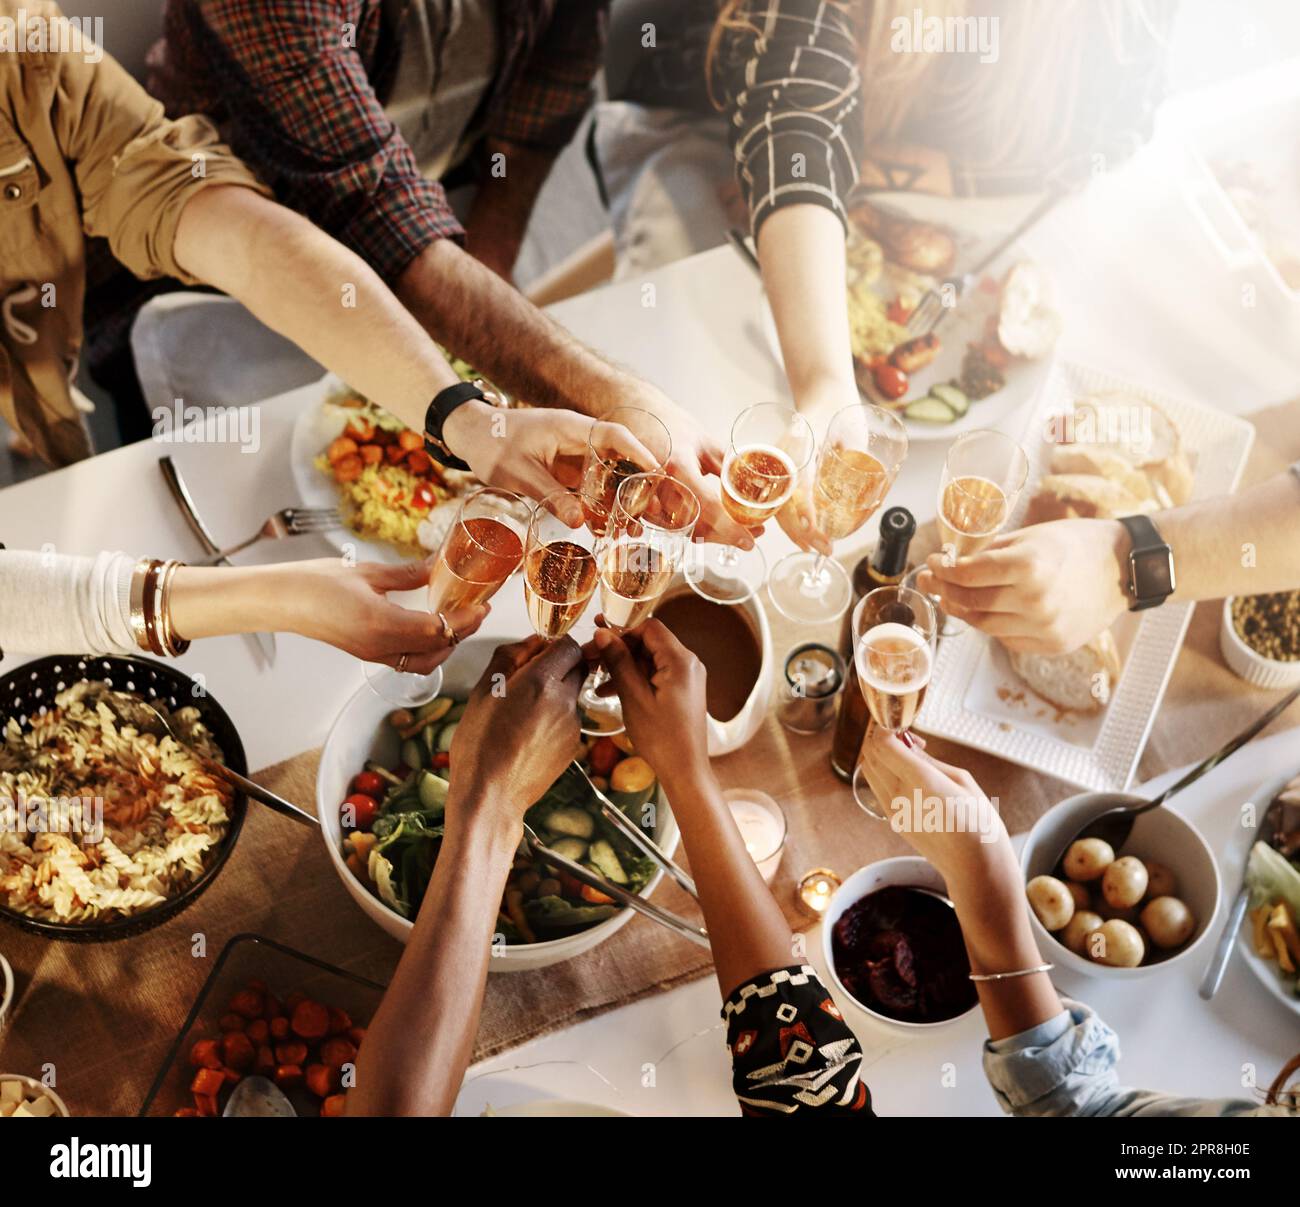 L'amitié est une bonne raison de célébrer. Un groupe de jeunes amis faisant un toast à un dîner. Banque D'Images